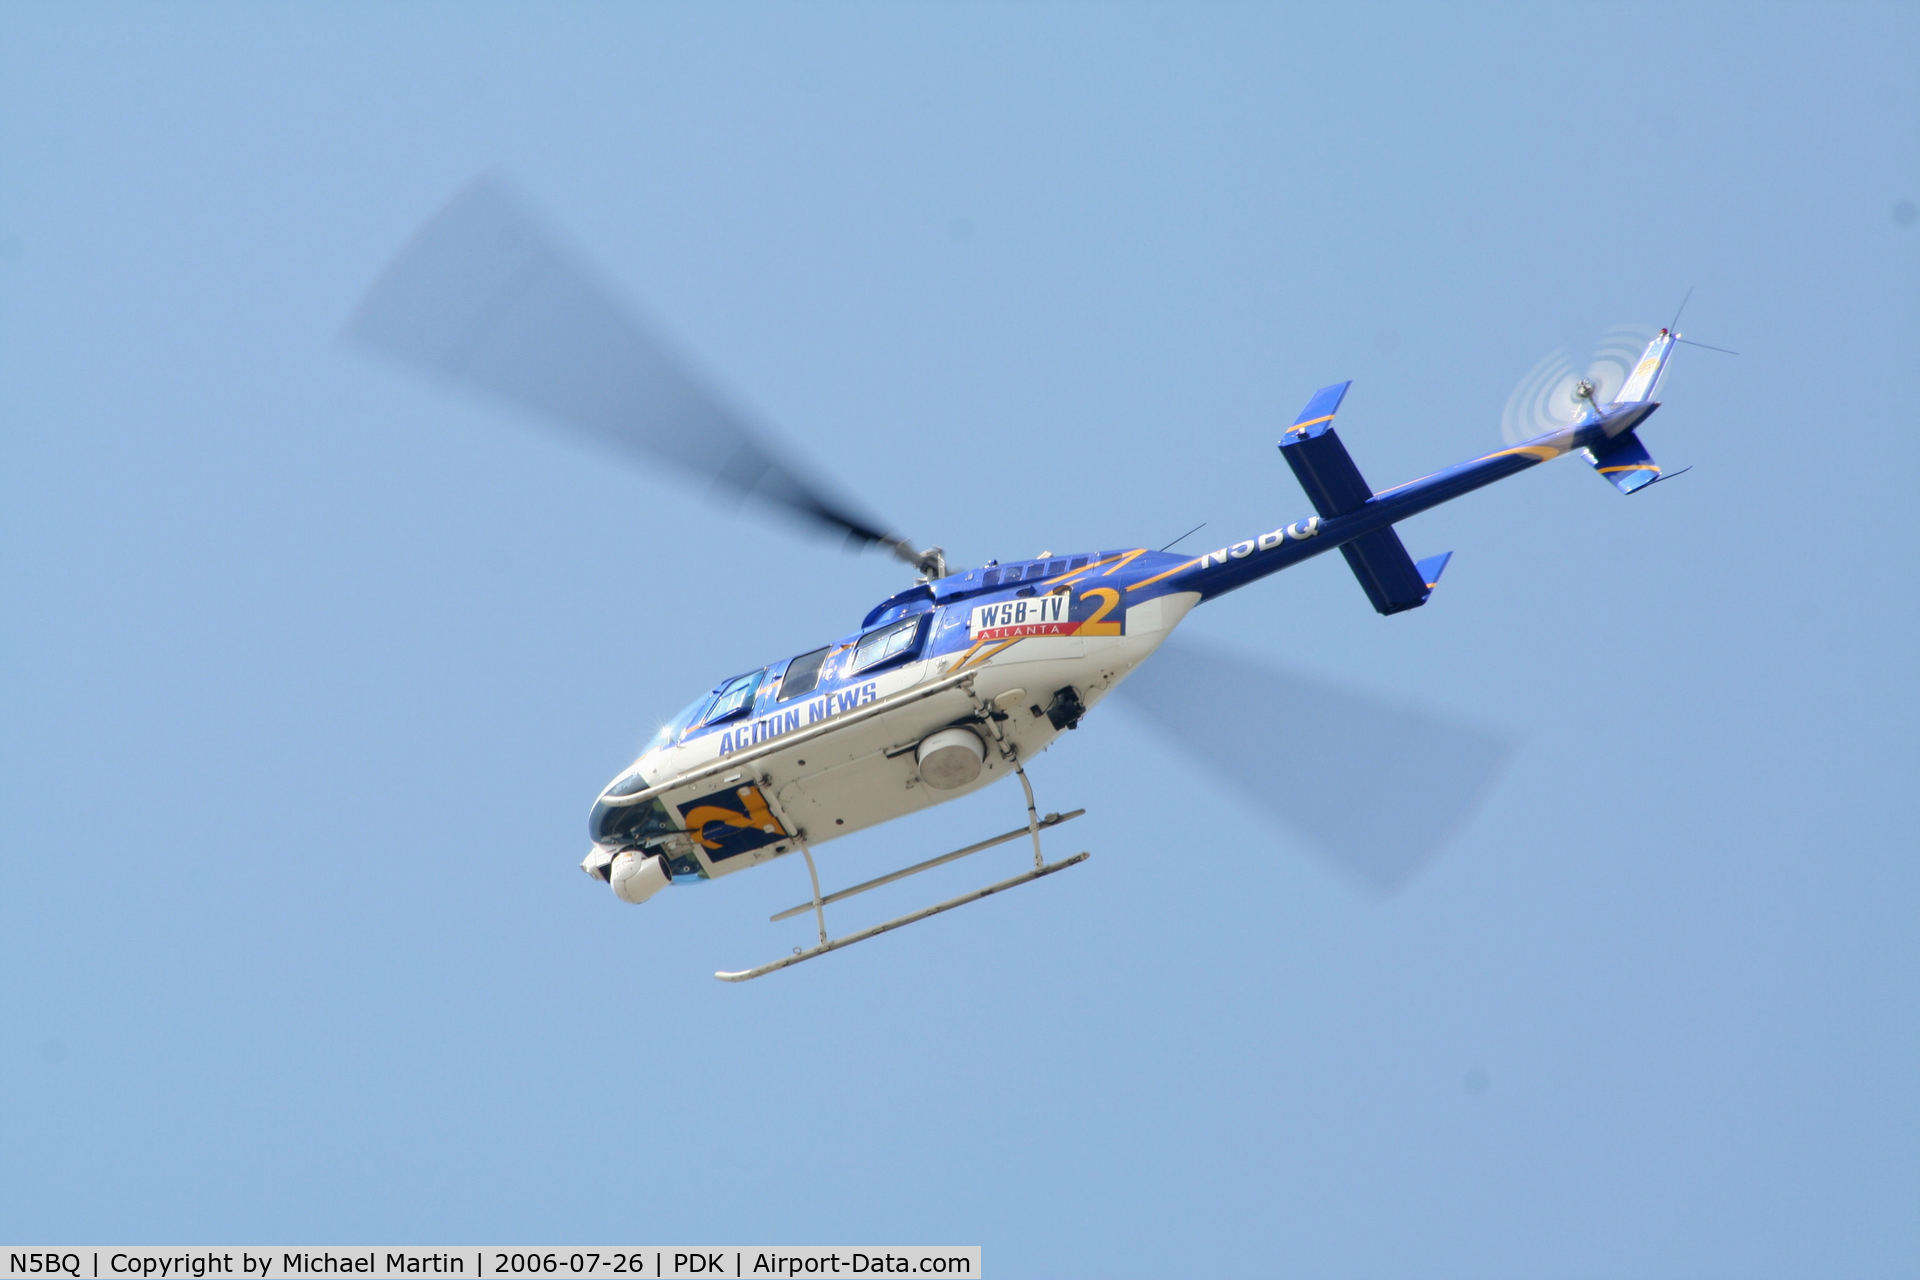 N5BQ, 1992 Bell 206L-4 LongRanger IV LongRanger C/N 52007, WSB TV-2 Action News Helicopter Returning From Story